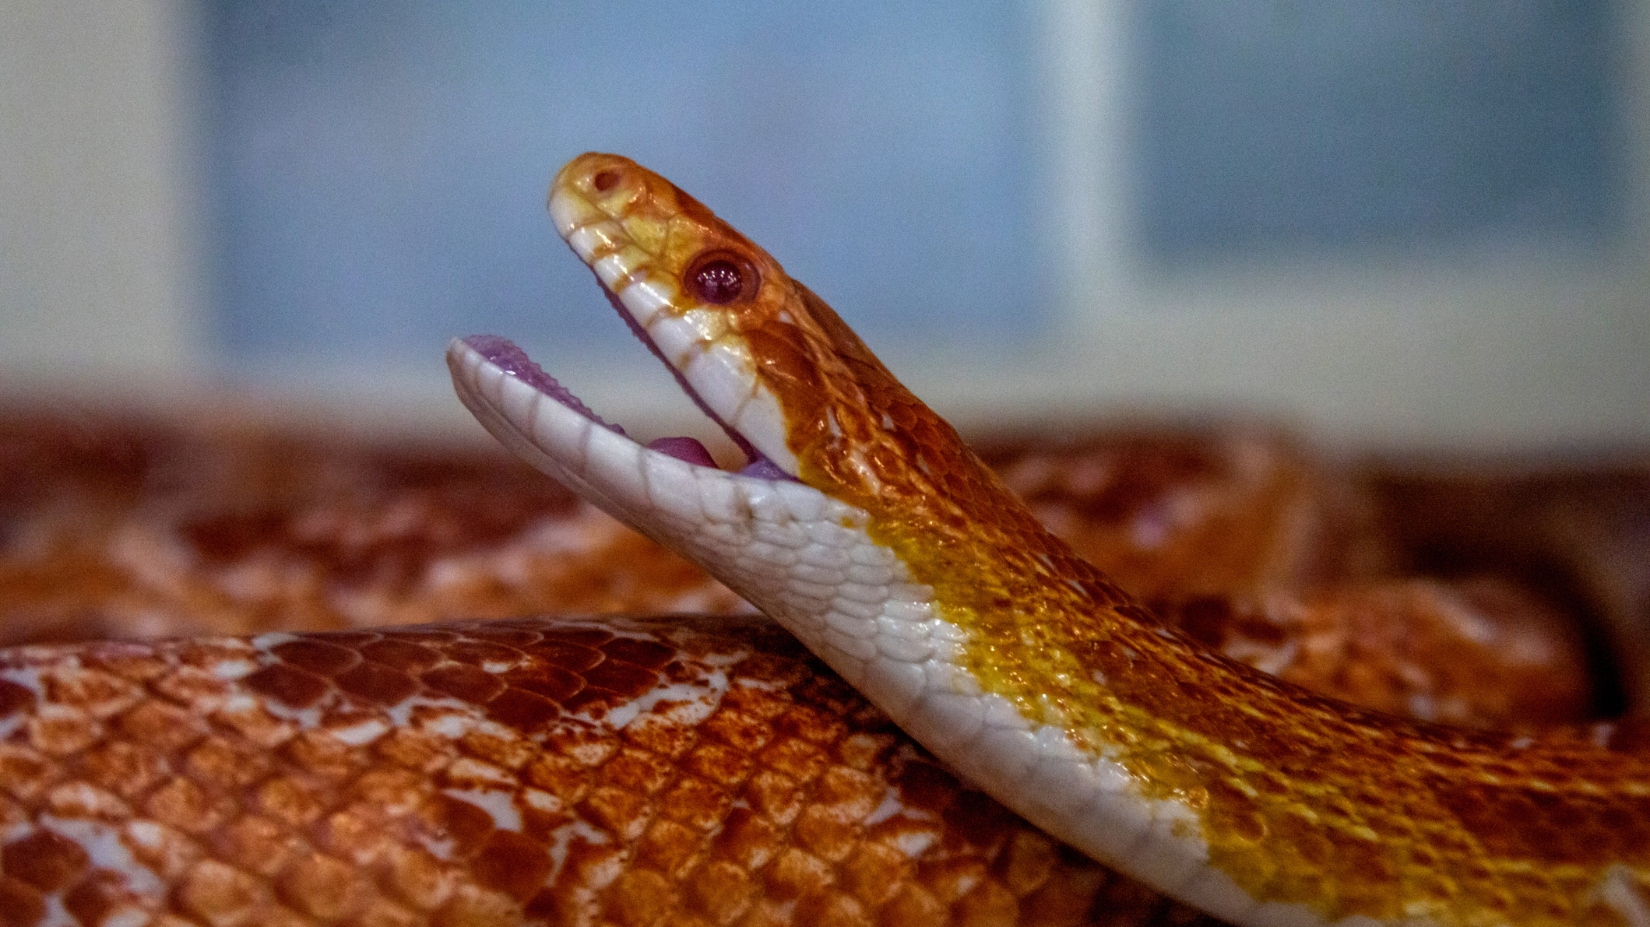 corn snake pet up close